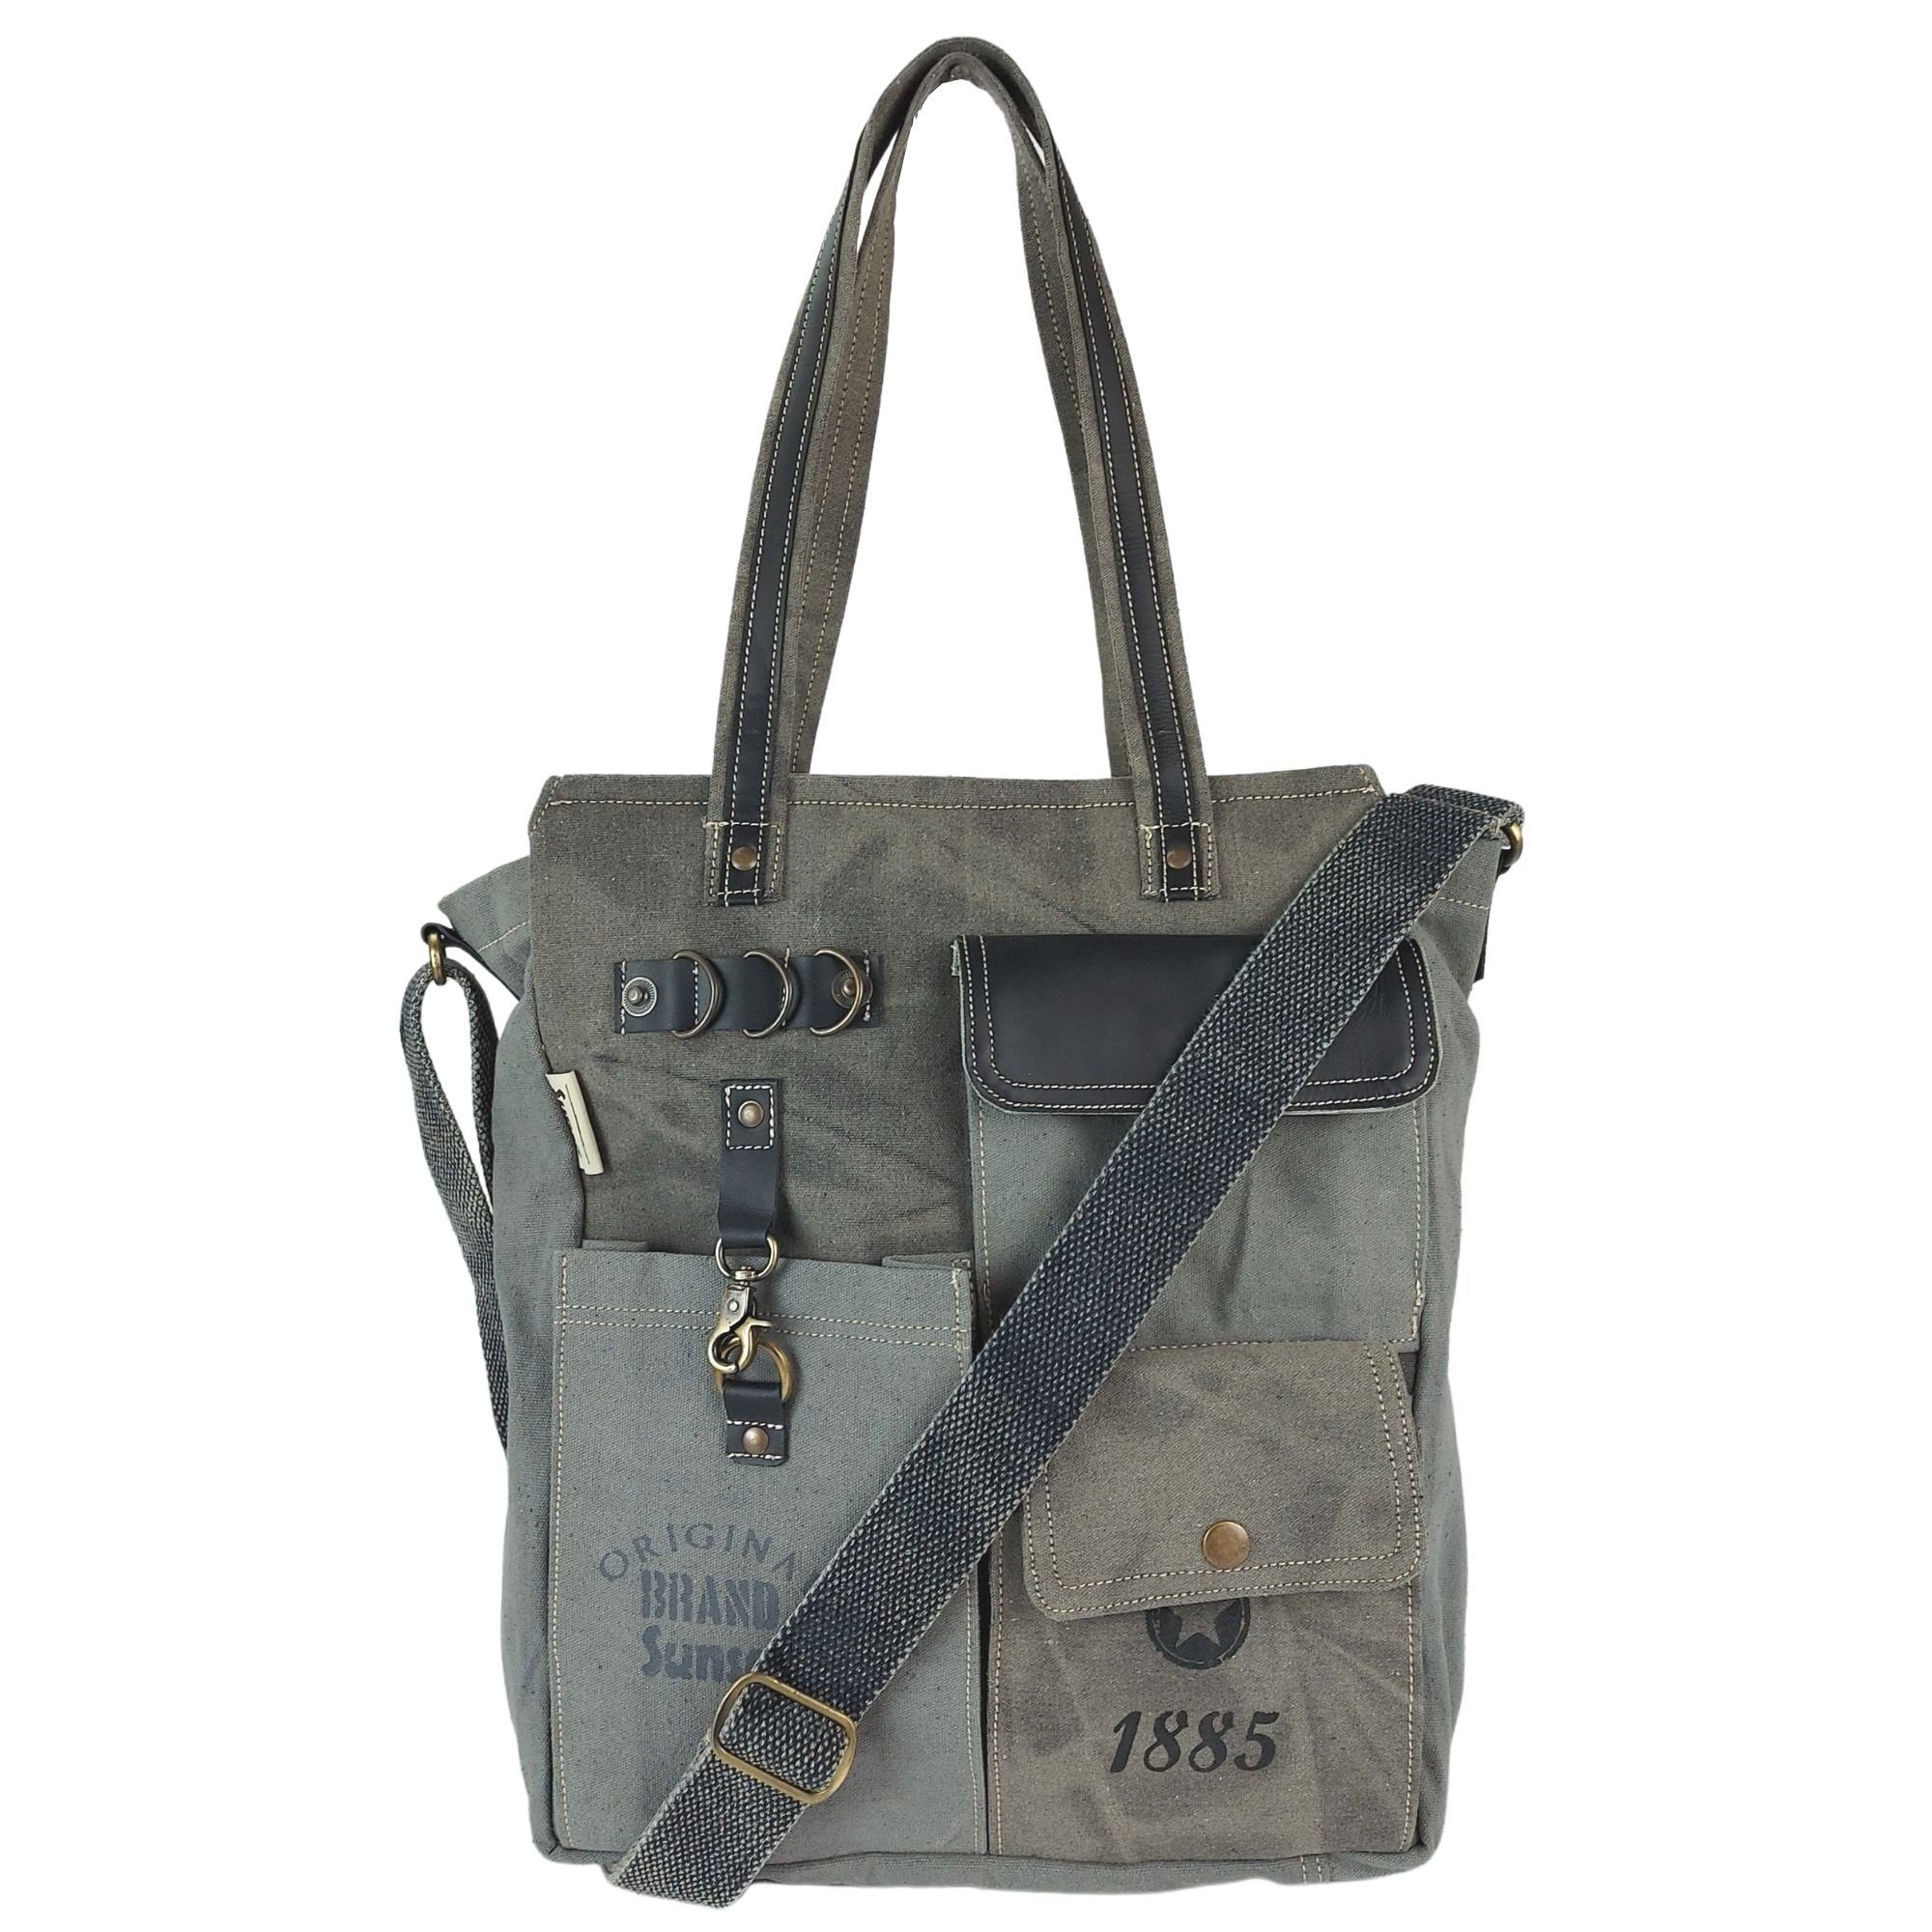 Sunsa Handtasche Vintage Handgelenktasche Handtasche mit viele Fächer große Shopper, XXL Vintage Tasche schwarz